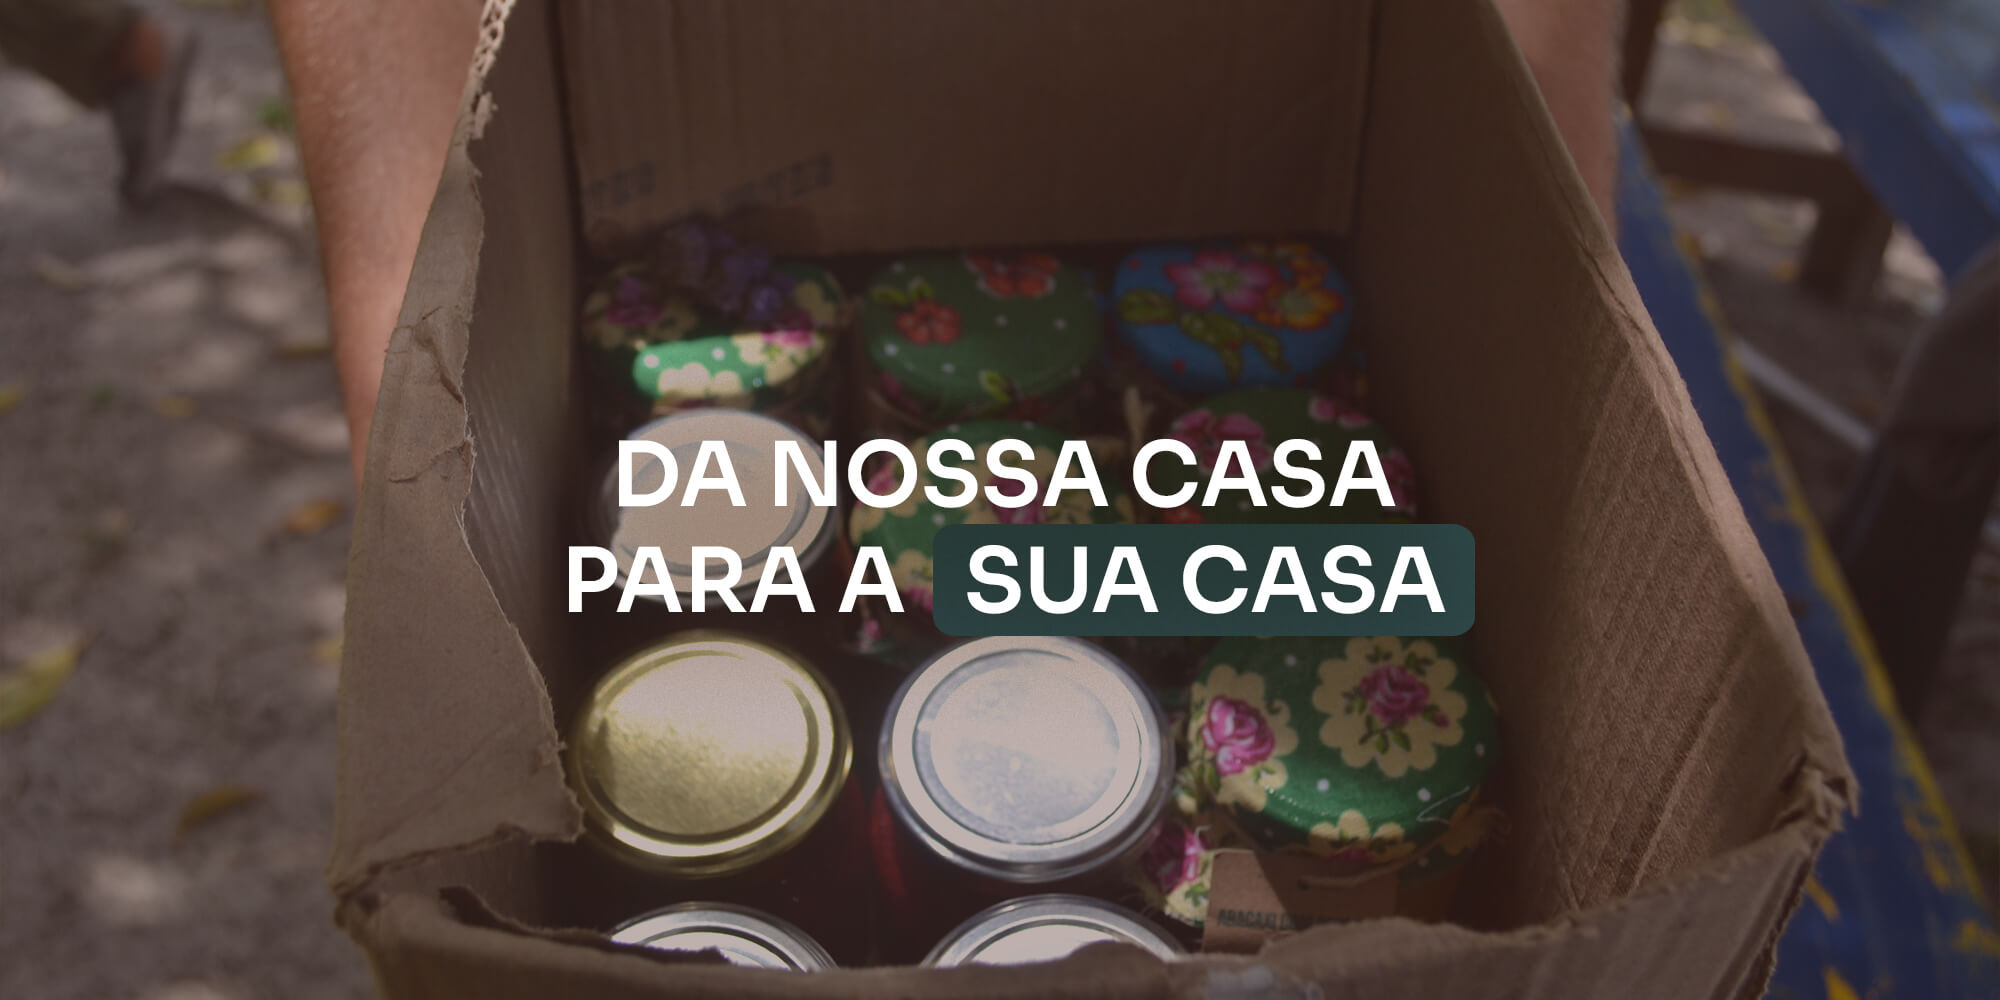 Caixa de papelão com potes de conserva artesanais dentro, com o texto "DA NOSSA CASA PARA A SUA CASA"